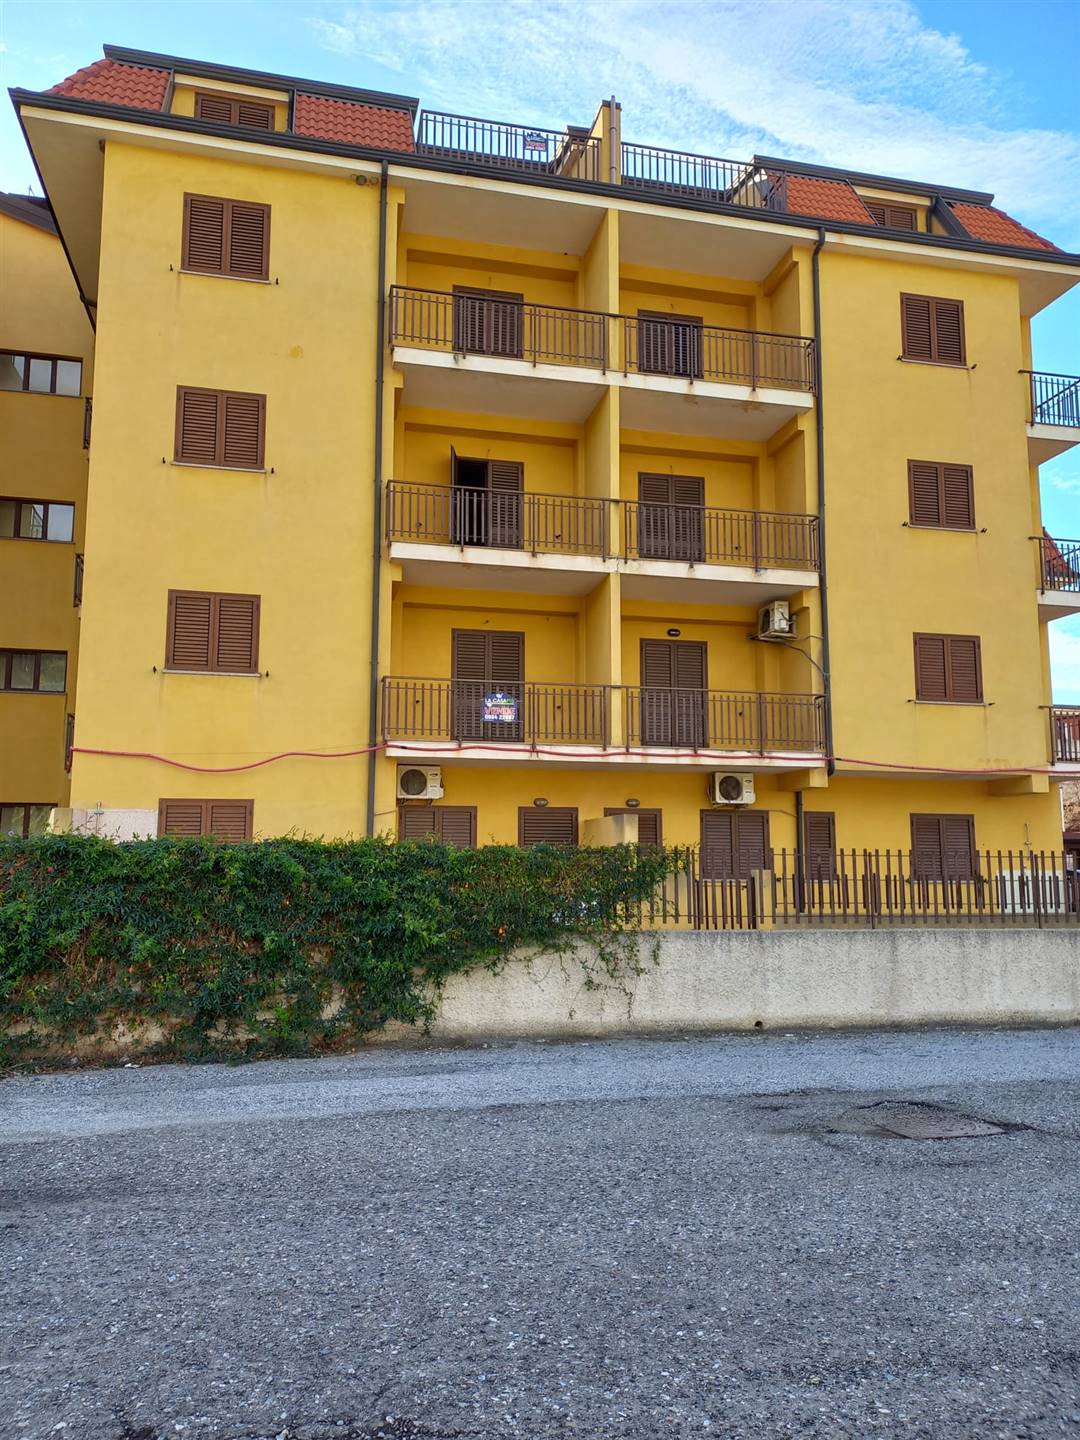 Appartamento in vendita a Nocera Terinese, 2 locali, zona Località: MARINA DI NOCERA TERINESE, prezzo € 65.000 | CambioCasa.it